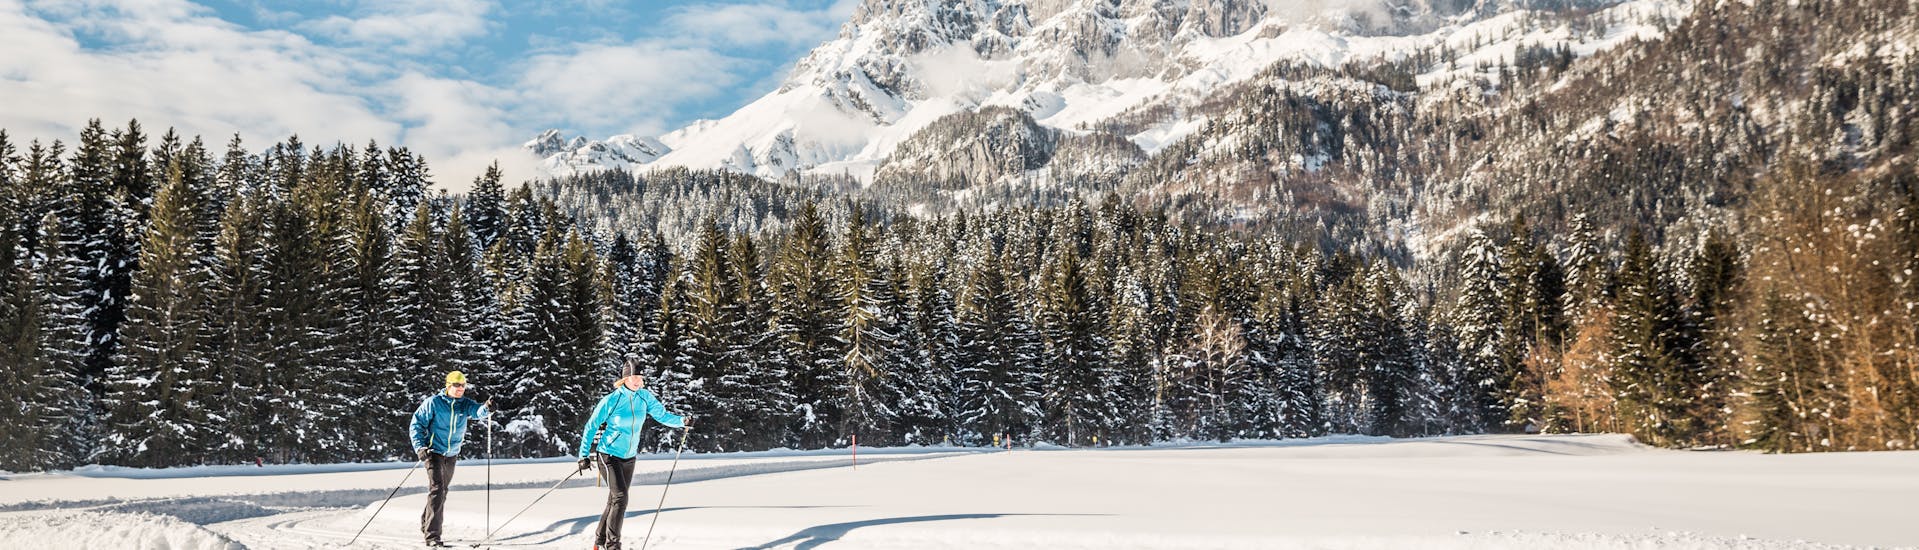 Twee langlaufers genieten van de natuur tijdens de langlauflessen voor alle niveaus met de Schneesportschule Oberndorf.